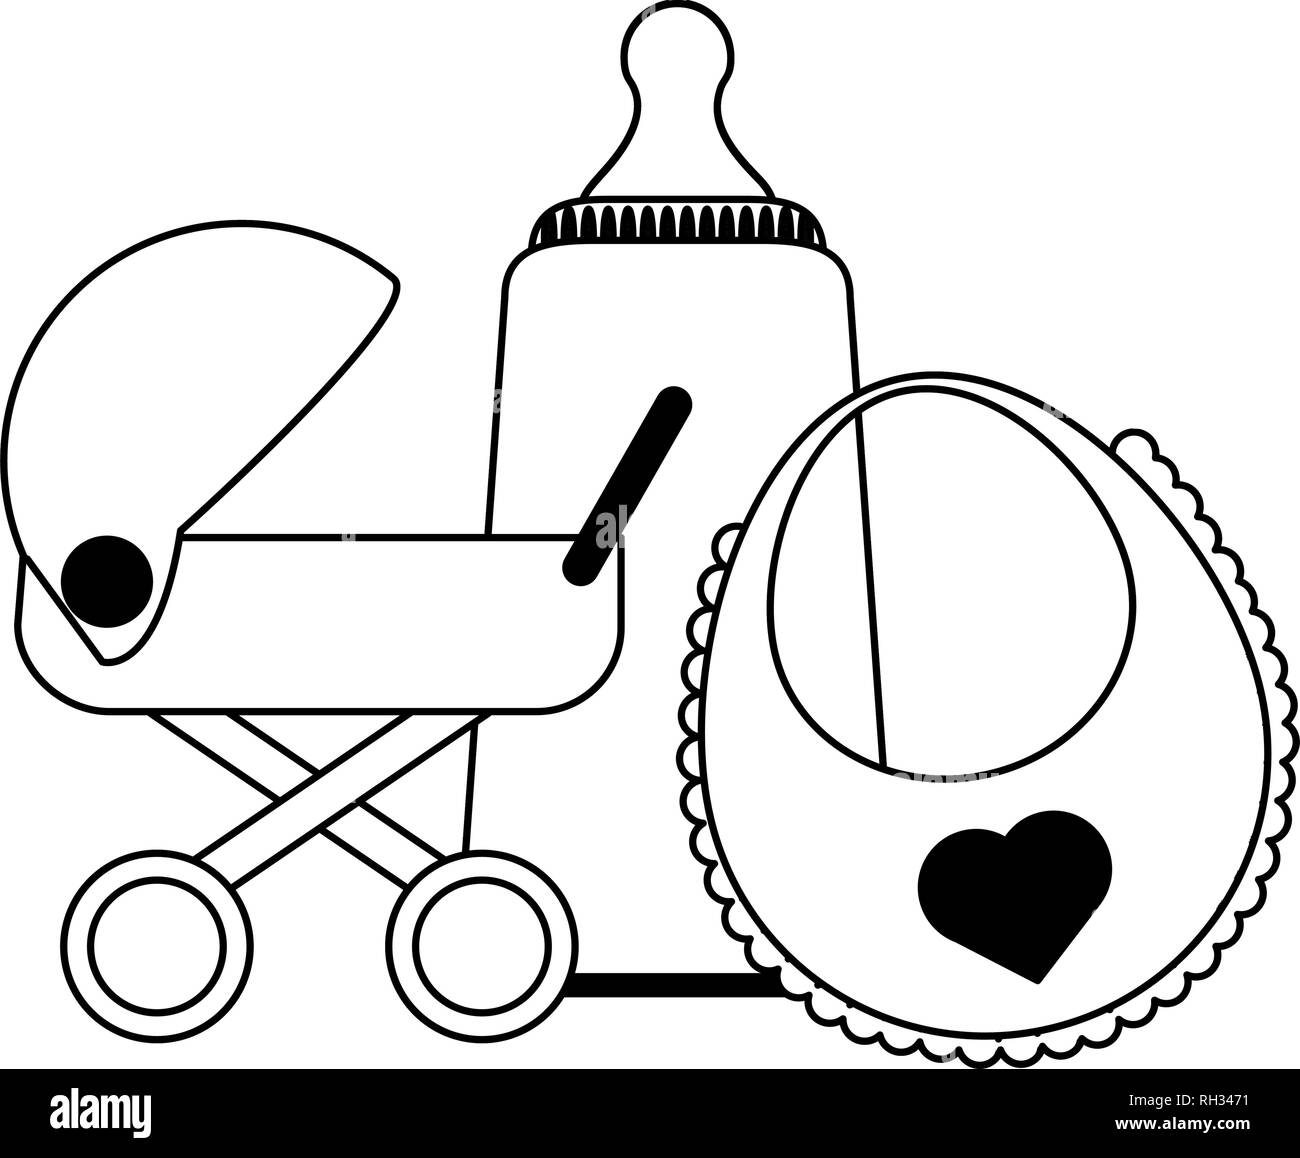 Trona Para Bebé Aislado En El Fondo Blanco. Vector Clip-art Ilustración.  Ilustraciones svg, vectoriales, clip art vectorizado libre de derechos.  Image 48122375